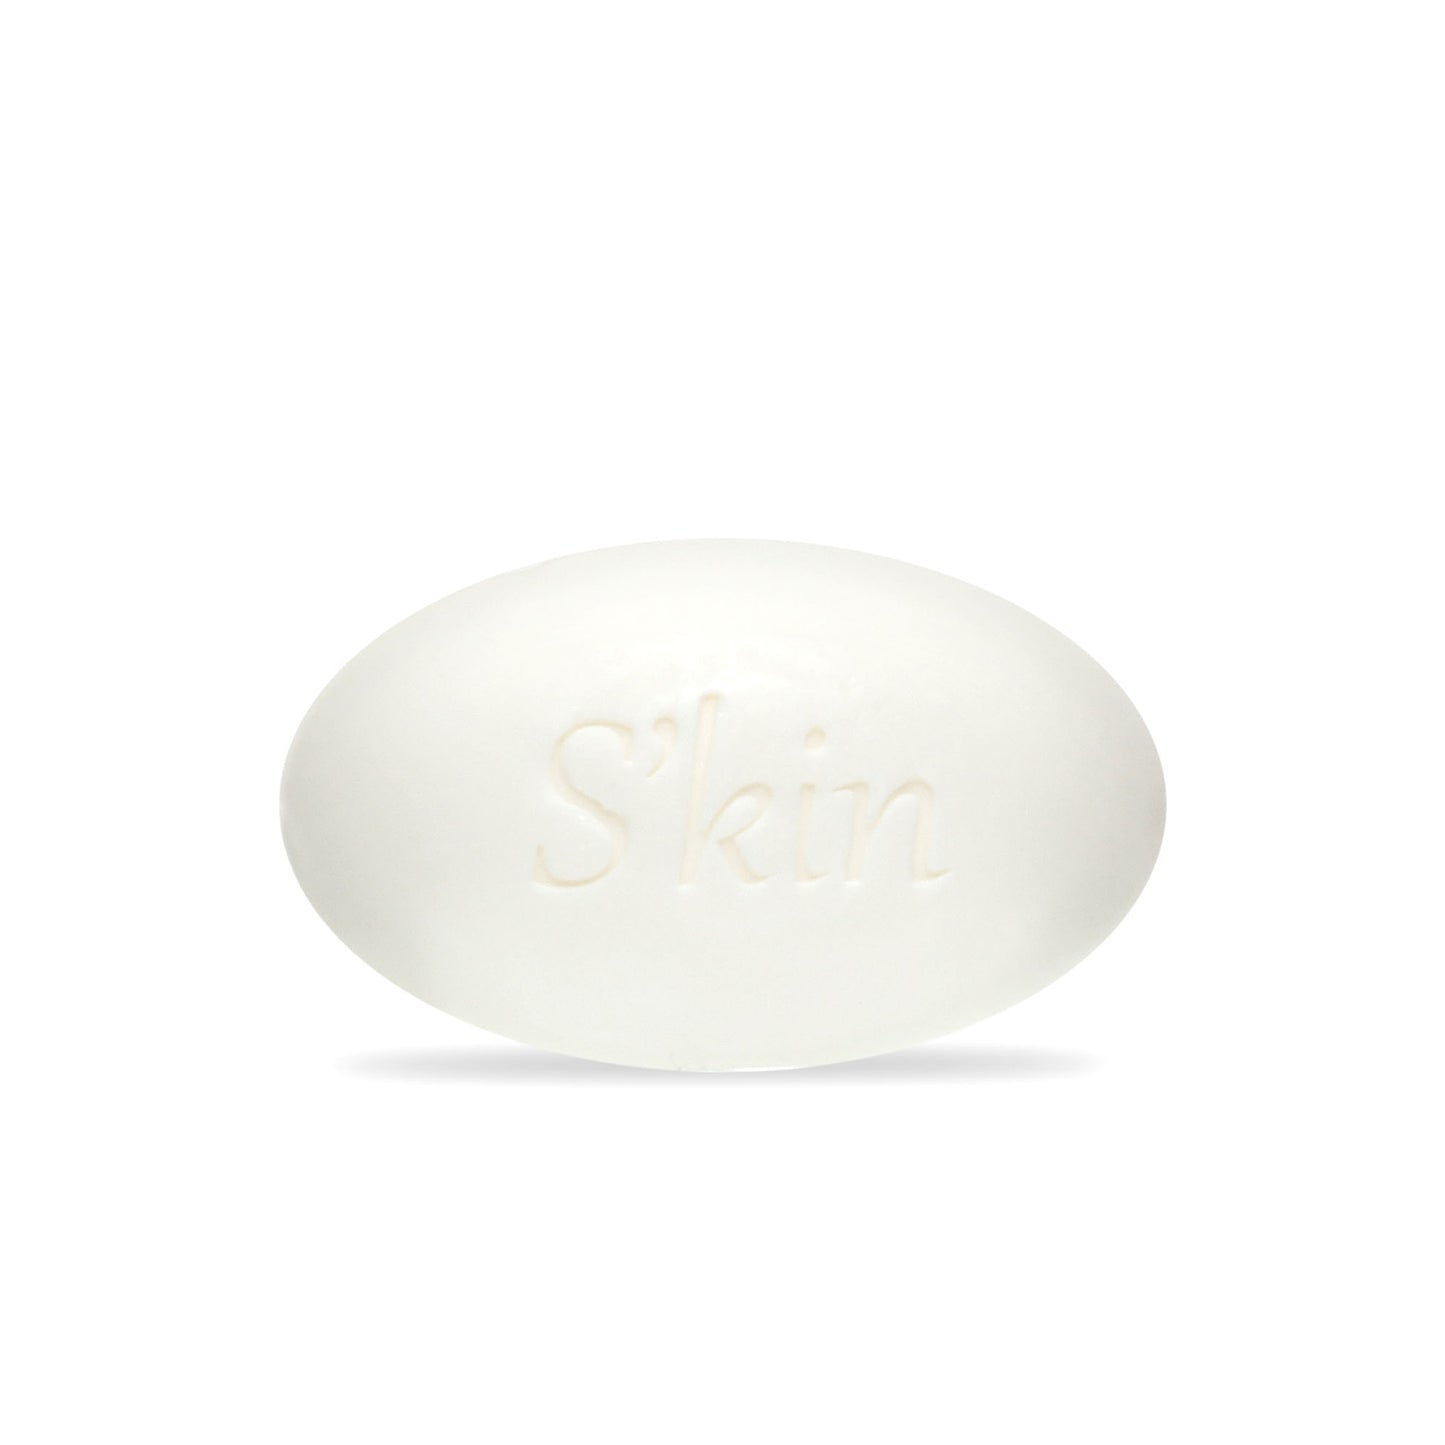 S'kin Moisturizing Beauty Bar Soap 110 g